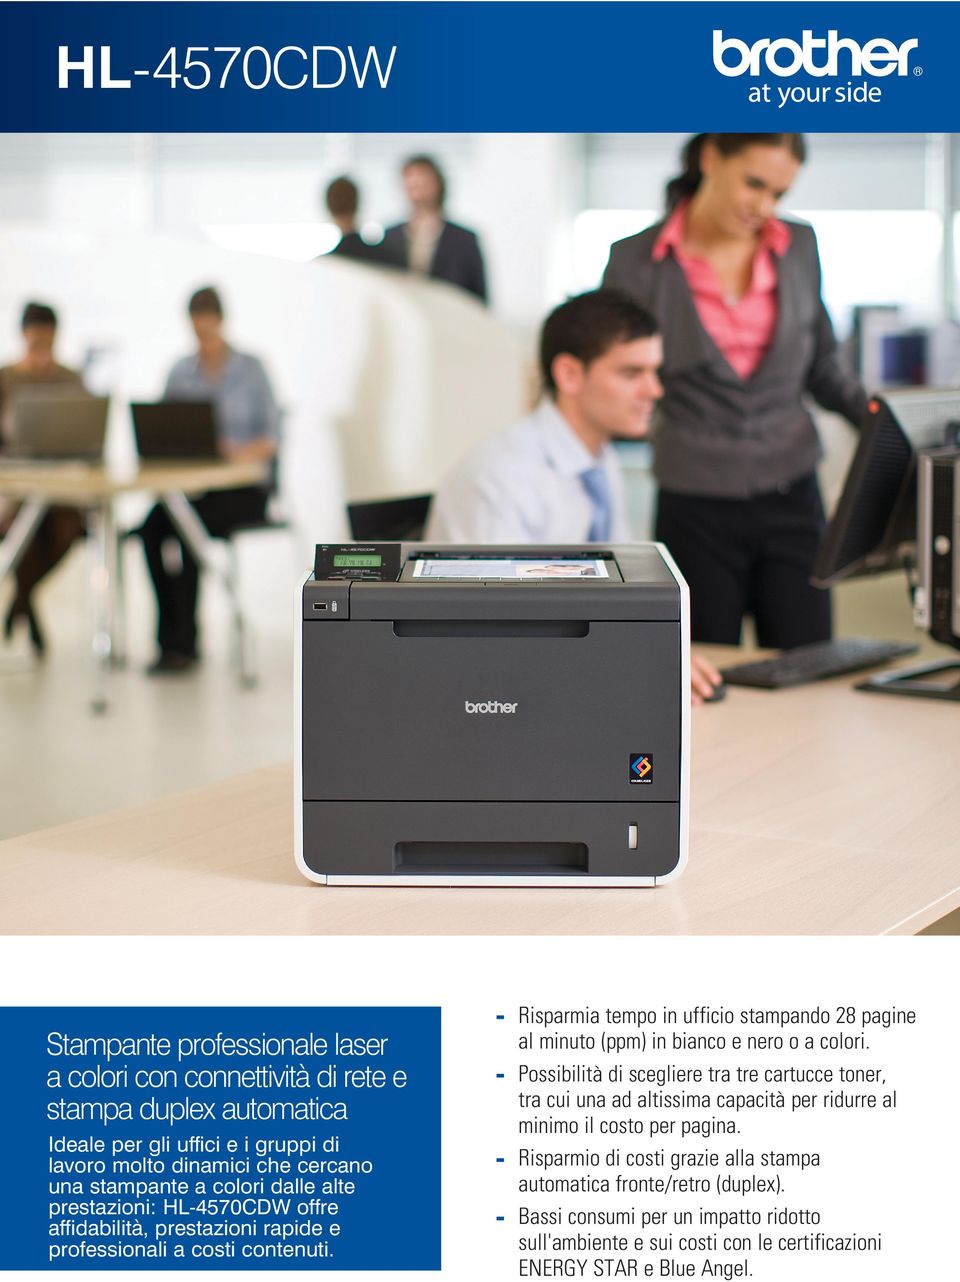 Risparmia tempo in ufficio stampando 28 pagine al minuto (ppm) in bianco e nero o a colori.